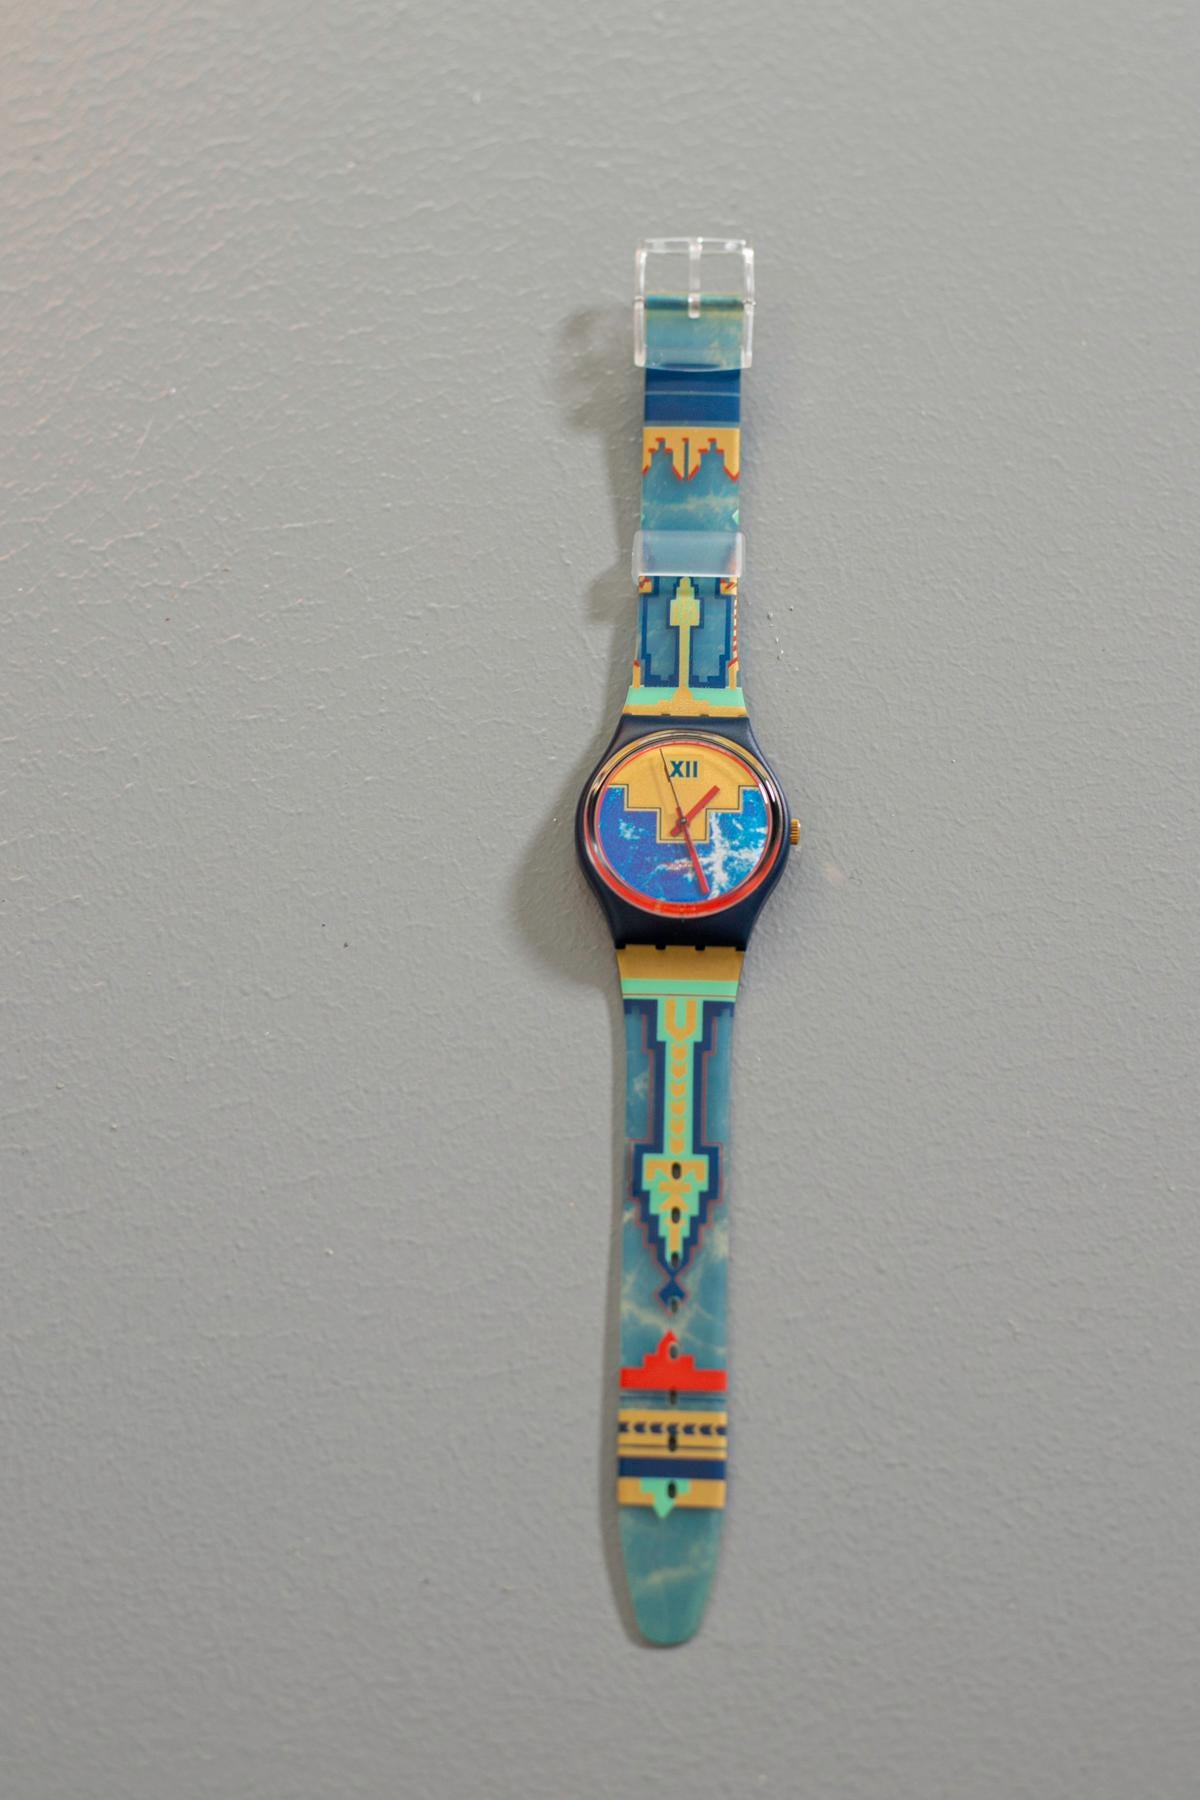 Eine alte Swatch mit einem wirklich einzigartigen Design. Das Armband hat eine Textur, die an Stammesmuster erinnert, die Farben dieser Uhr machen sie perfekt zu einem raffinierten oder sogar romantischen Outfit.

Material des Gehäuses: